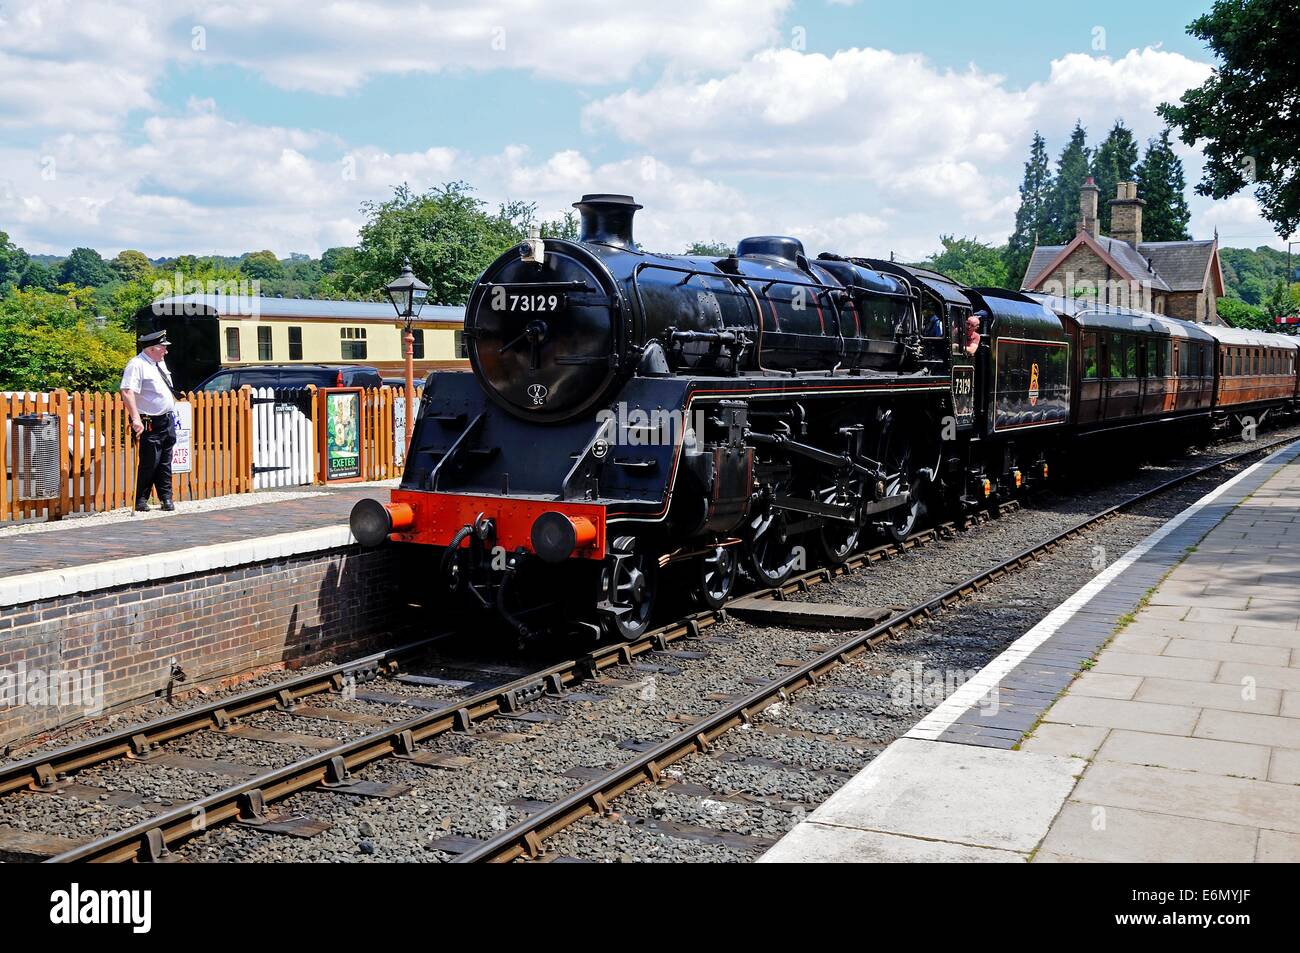 British Rail Locomotive à vapeur 4-6-0 standard de classe 5 en 73129 Numéro de British Rail noir à la gare, Arley. Banque D'Images